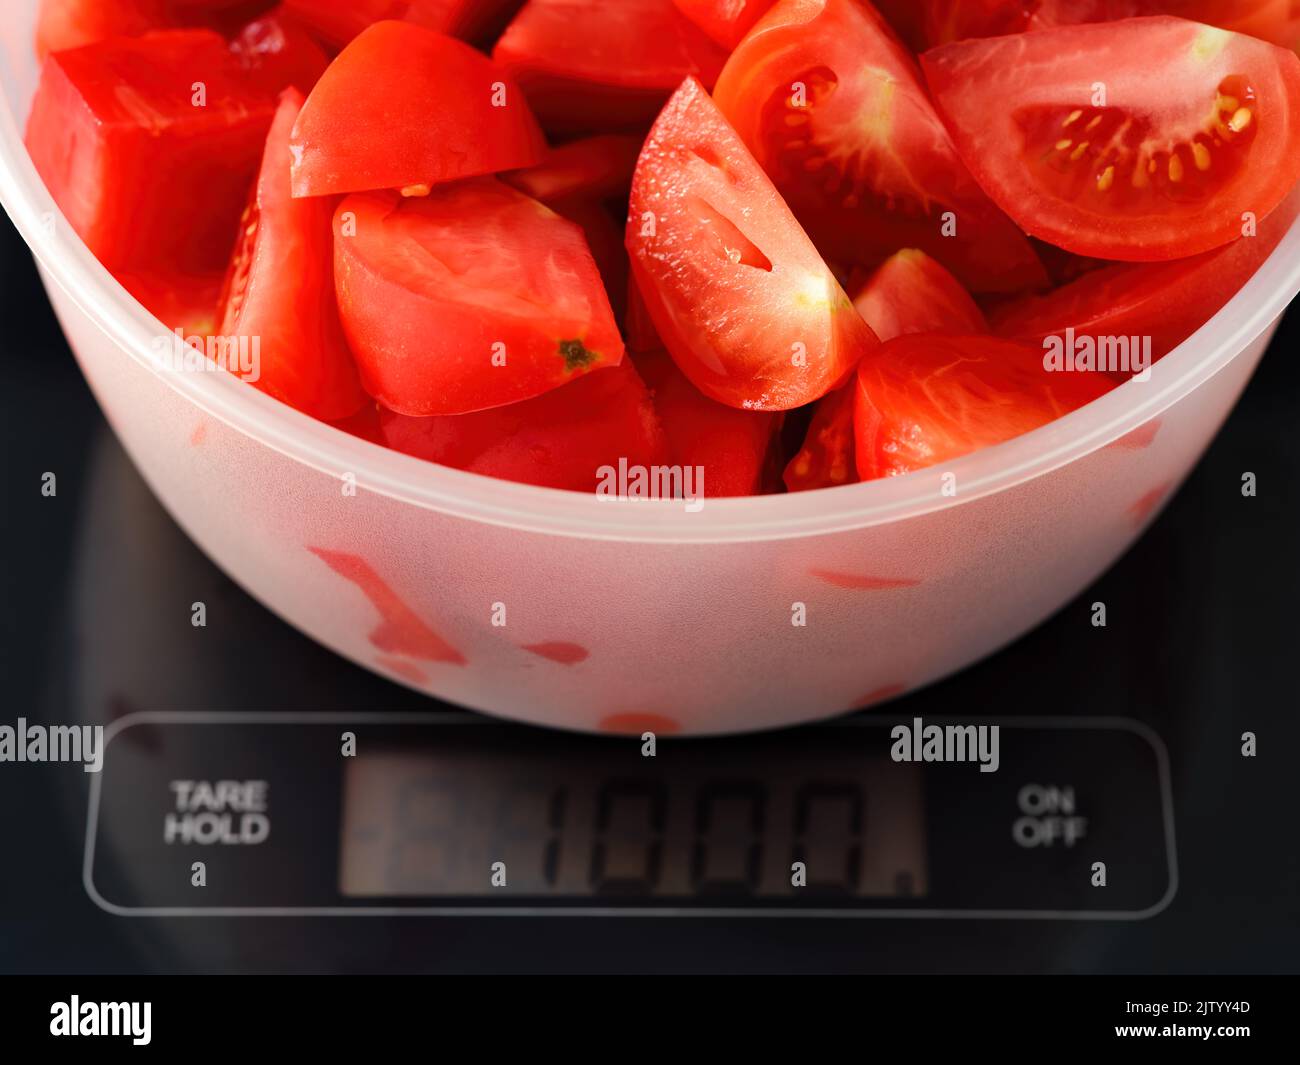 Un bol contenant un kilogramme de tranches de tomate sur une échelle numérique. L'accent est mis sur les tomates Banque D'Images